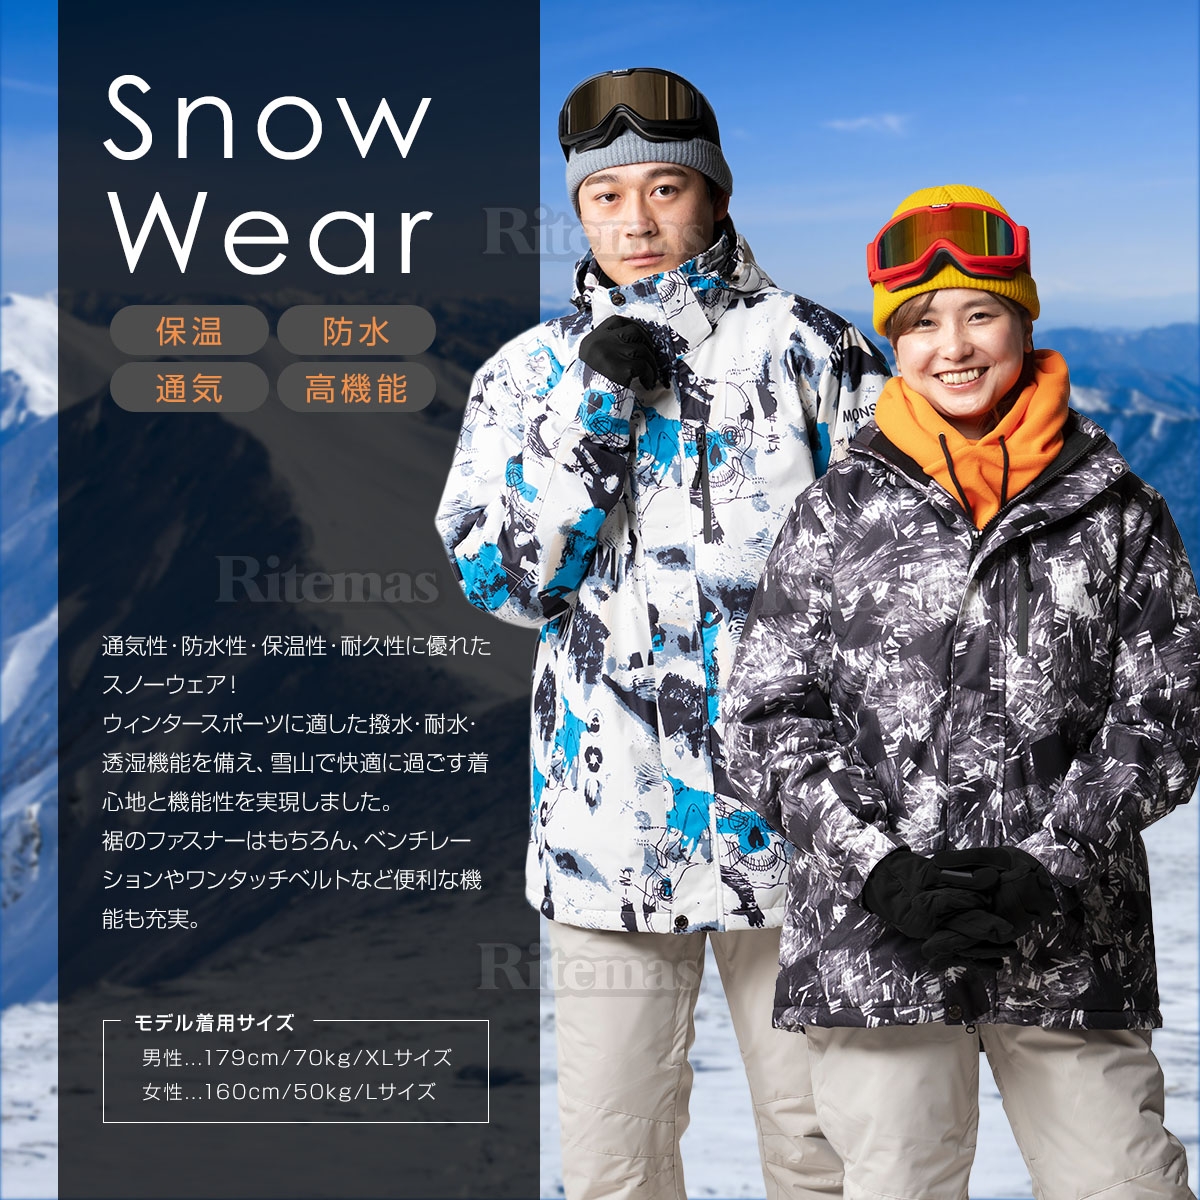  snowboard wear snow wear snowboard we ASCII wear snow jacket snowboard snowboard ski men's lady's jacket . windshield snow waterproof heat insulation 